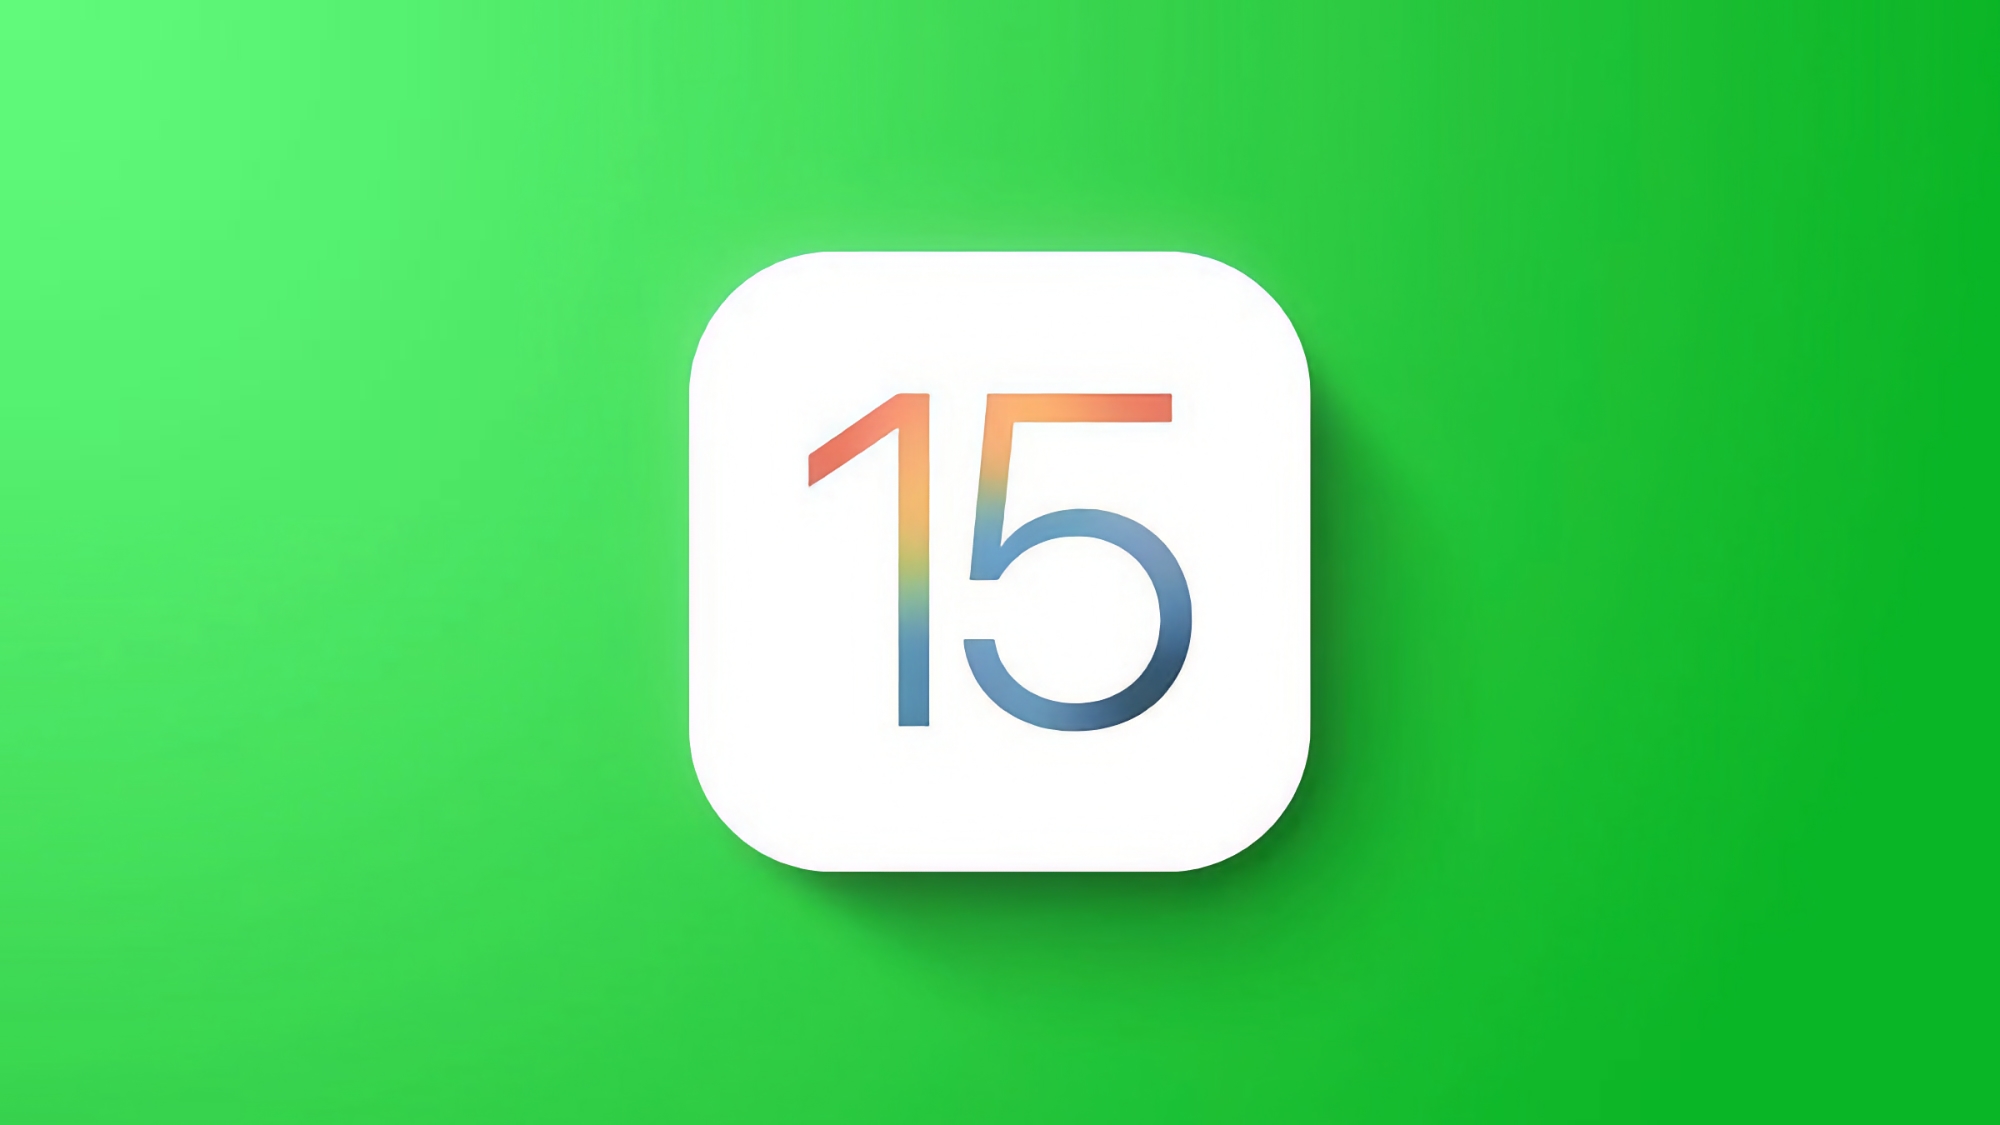 Apple a publié iOS 15.7.9, iPadOS 15.7.9, macOS 12.6.9 et macOS 11.7.10 pour les appareils plus anciens.